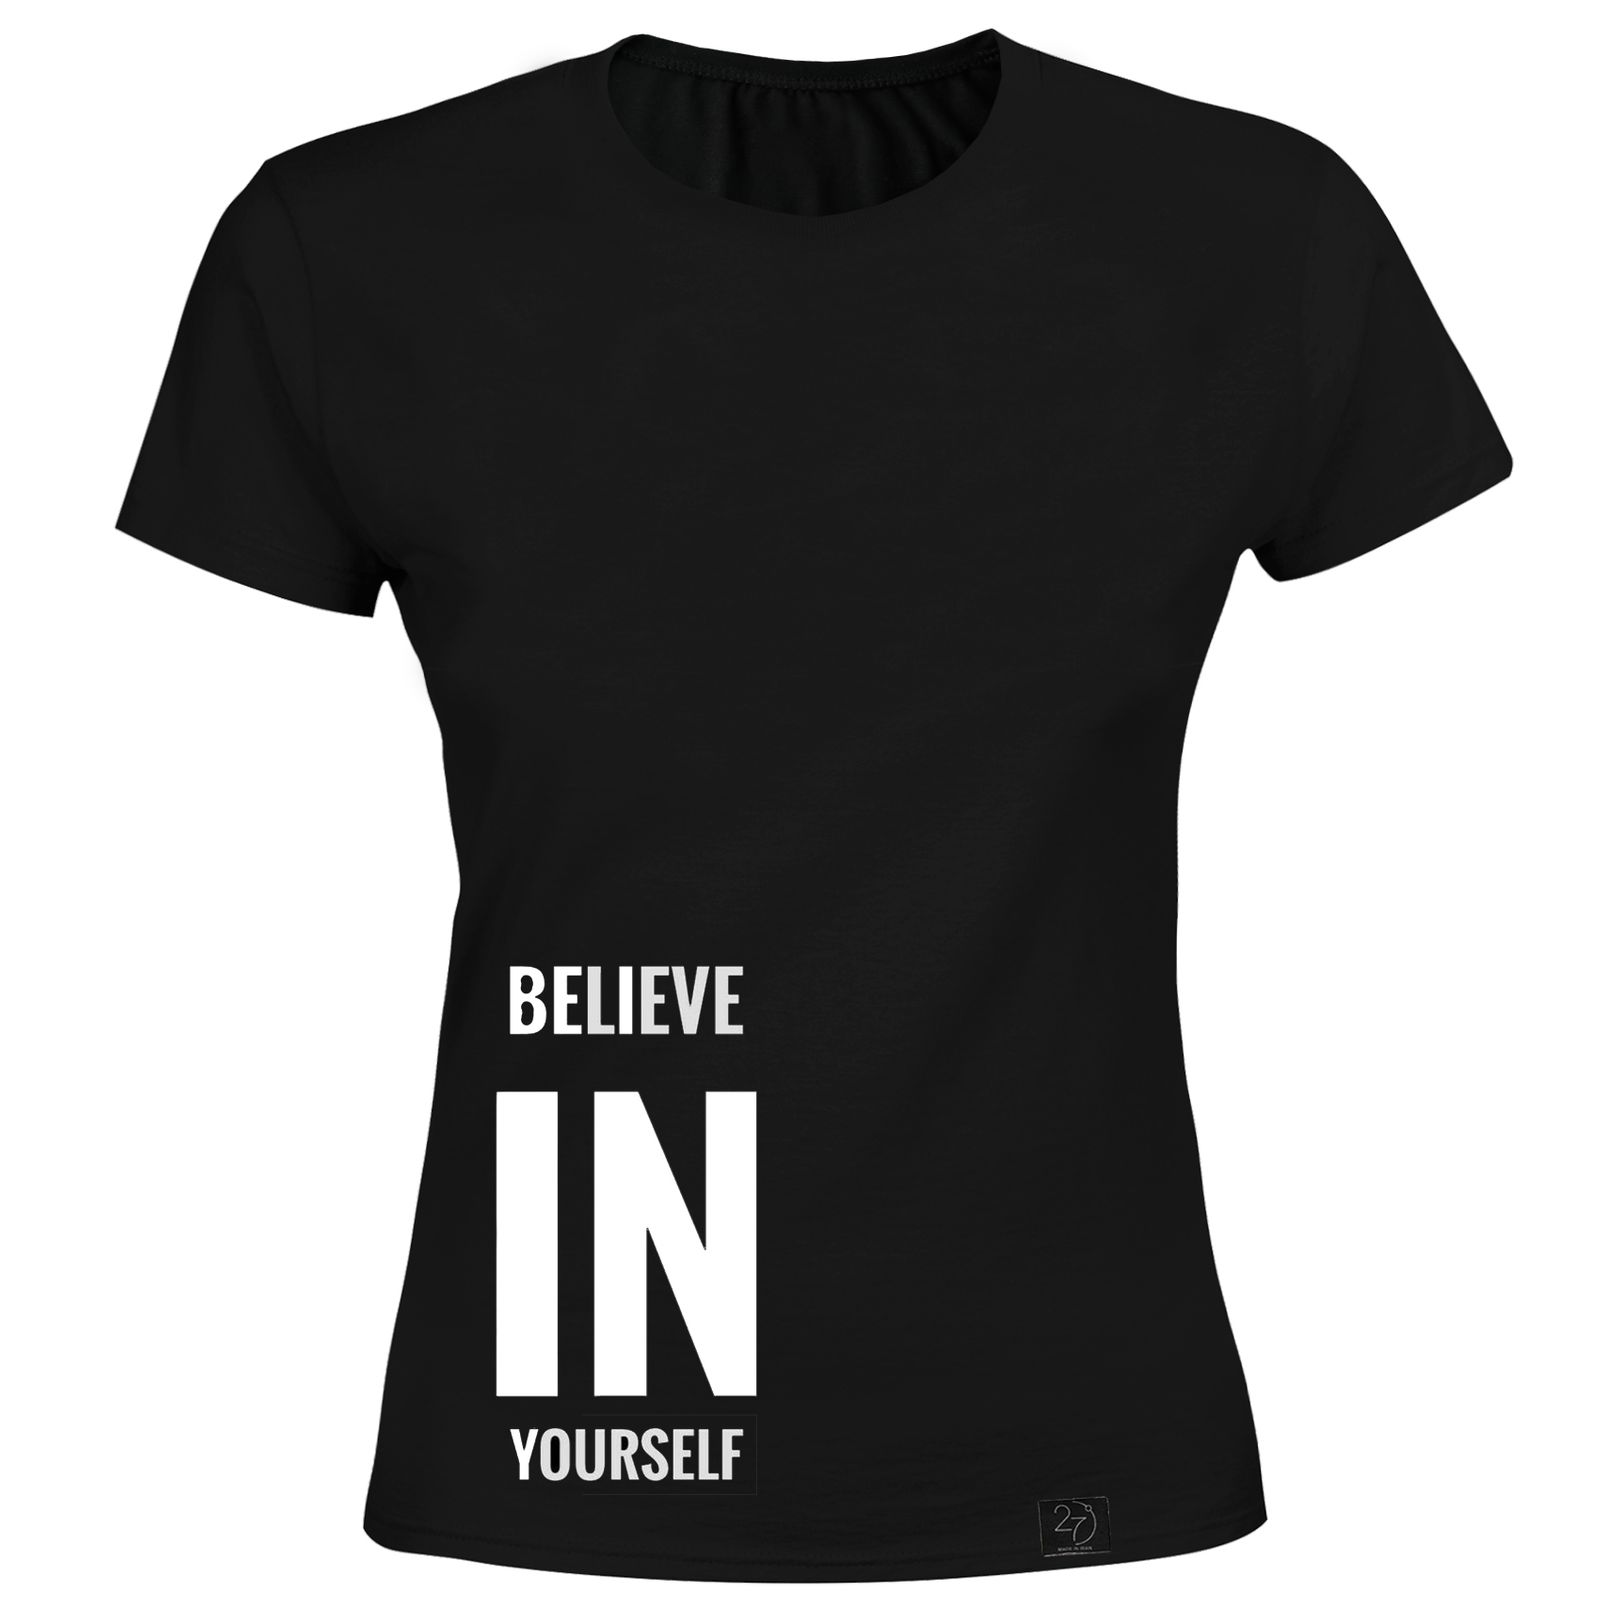  تی شرت زنانه 27 طرح BELIEVE IN YORSELF کد H01 رنگ مشکی -  - 1